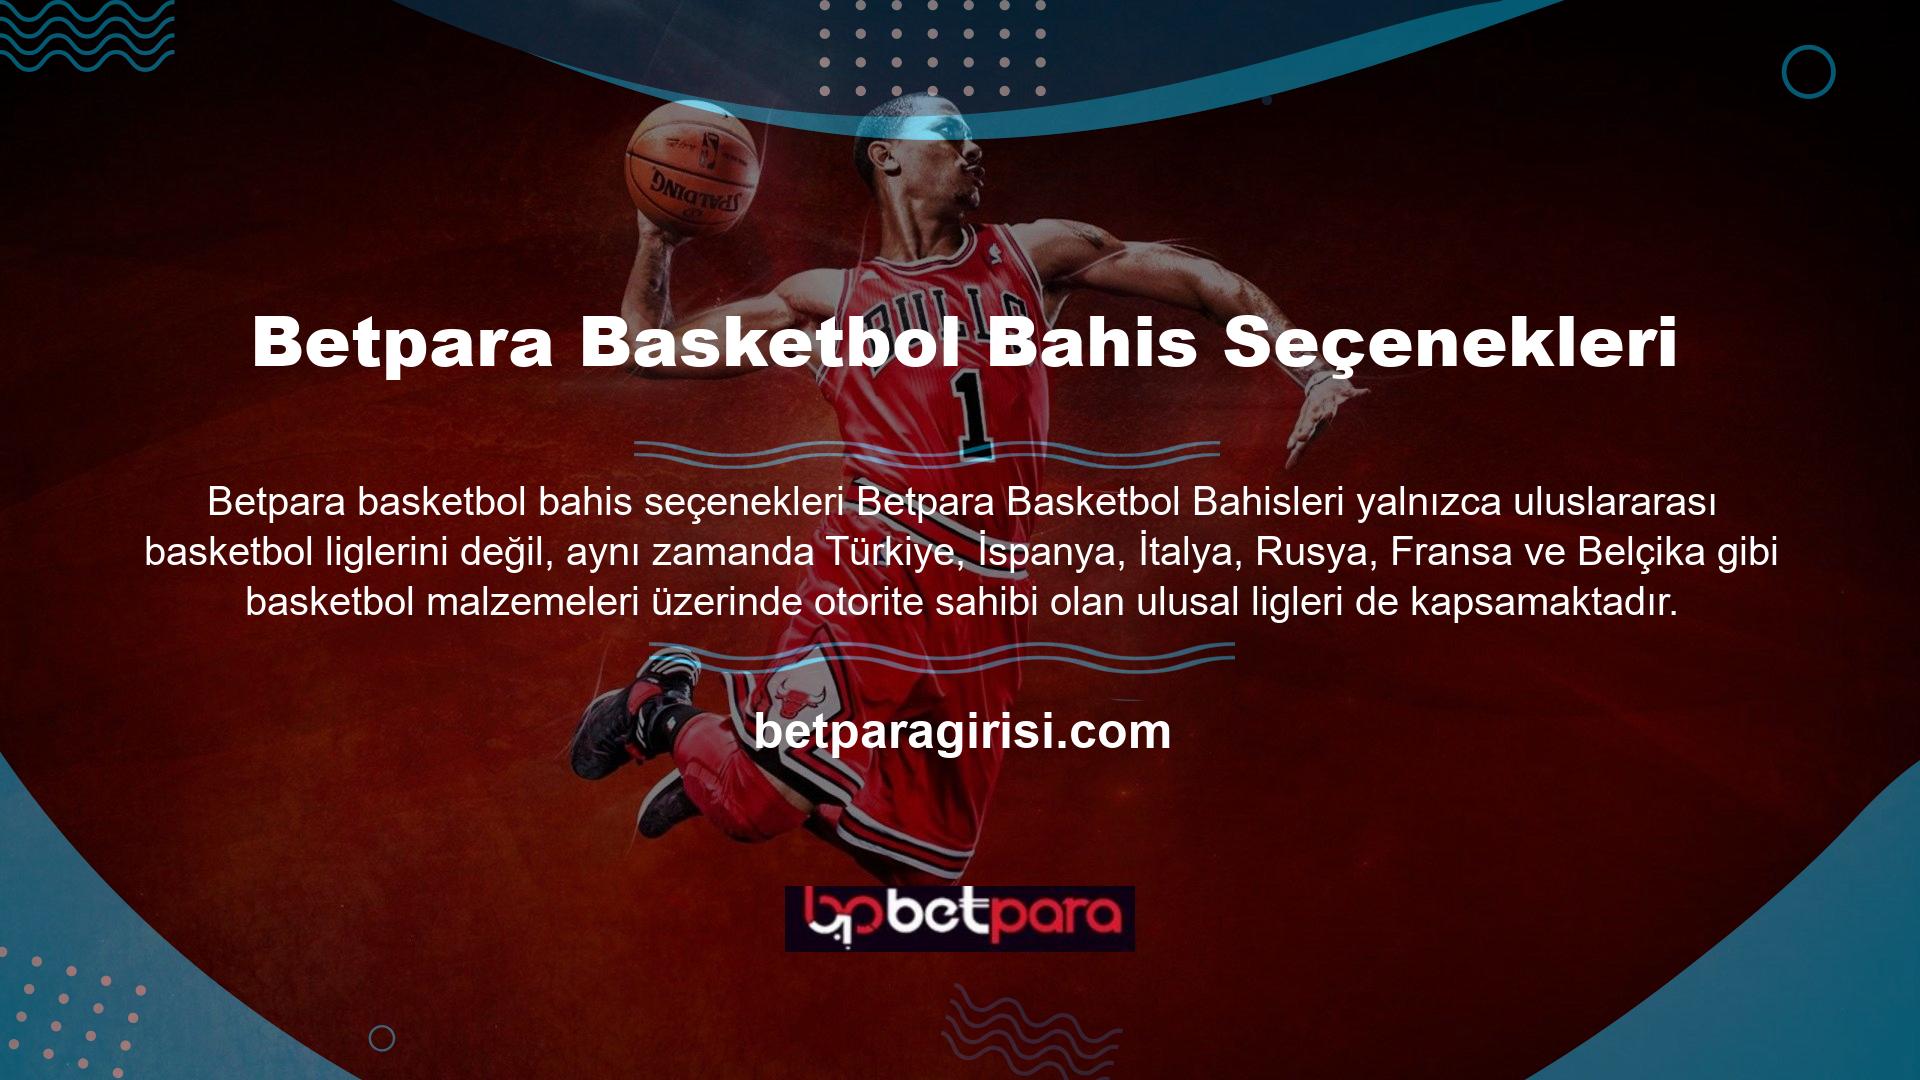 Basketbolda Betpara, NBA dünyasının 1 numarası için birçok özel menü hazırladı